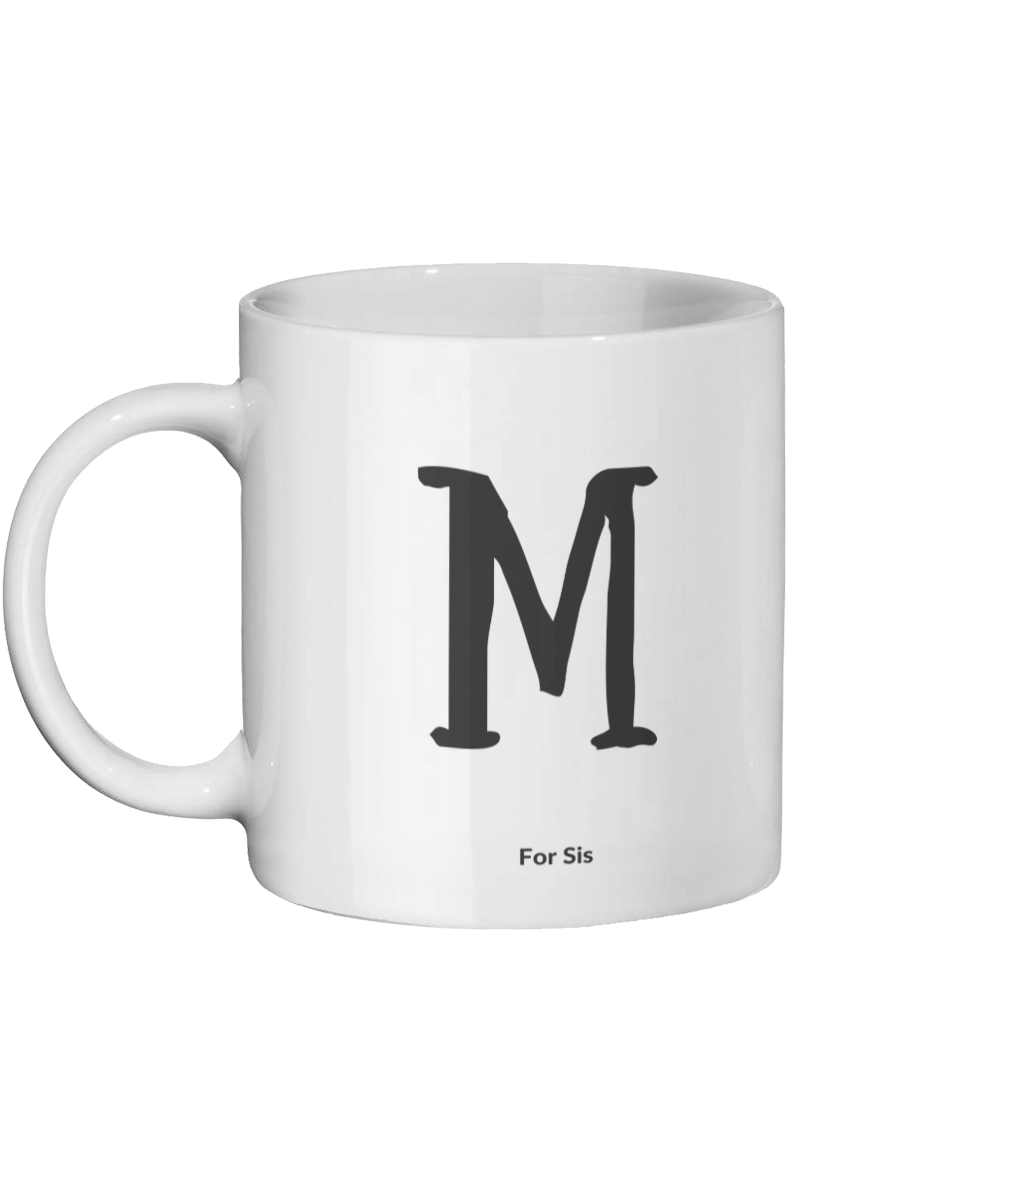 M for Sis Mug